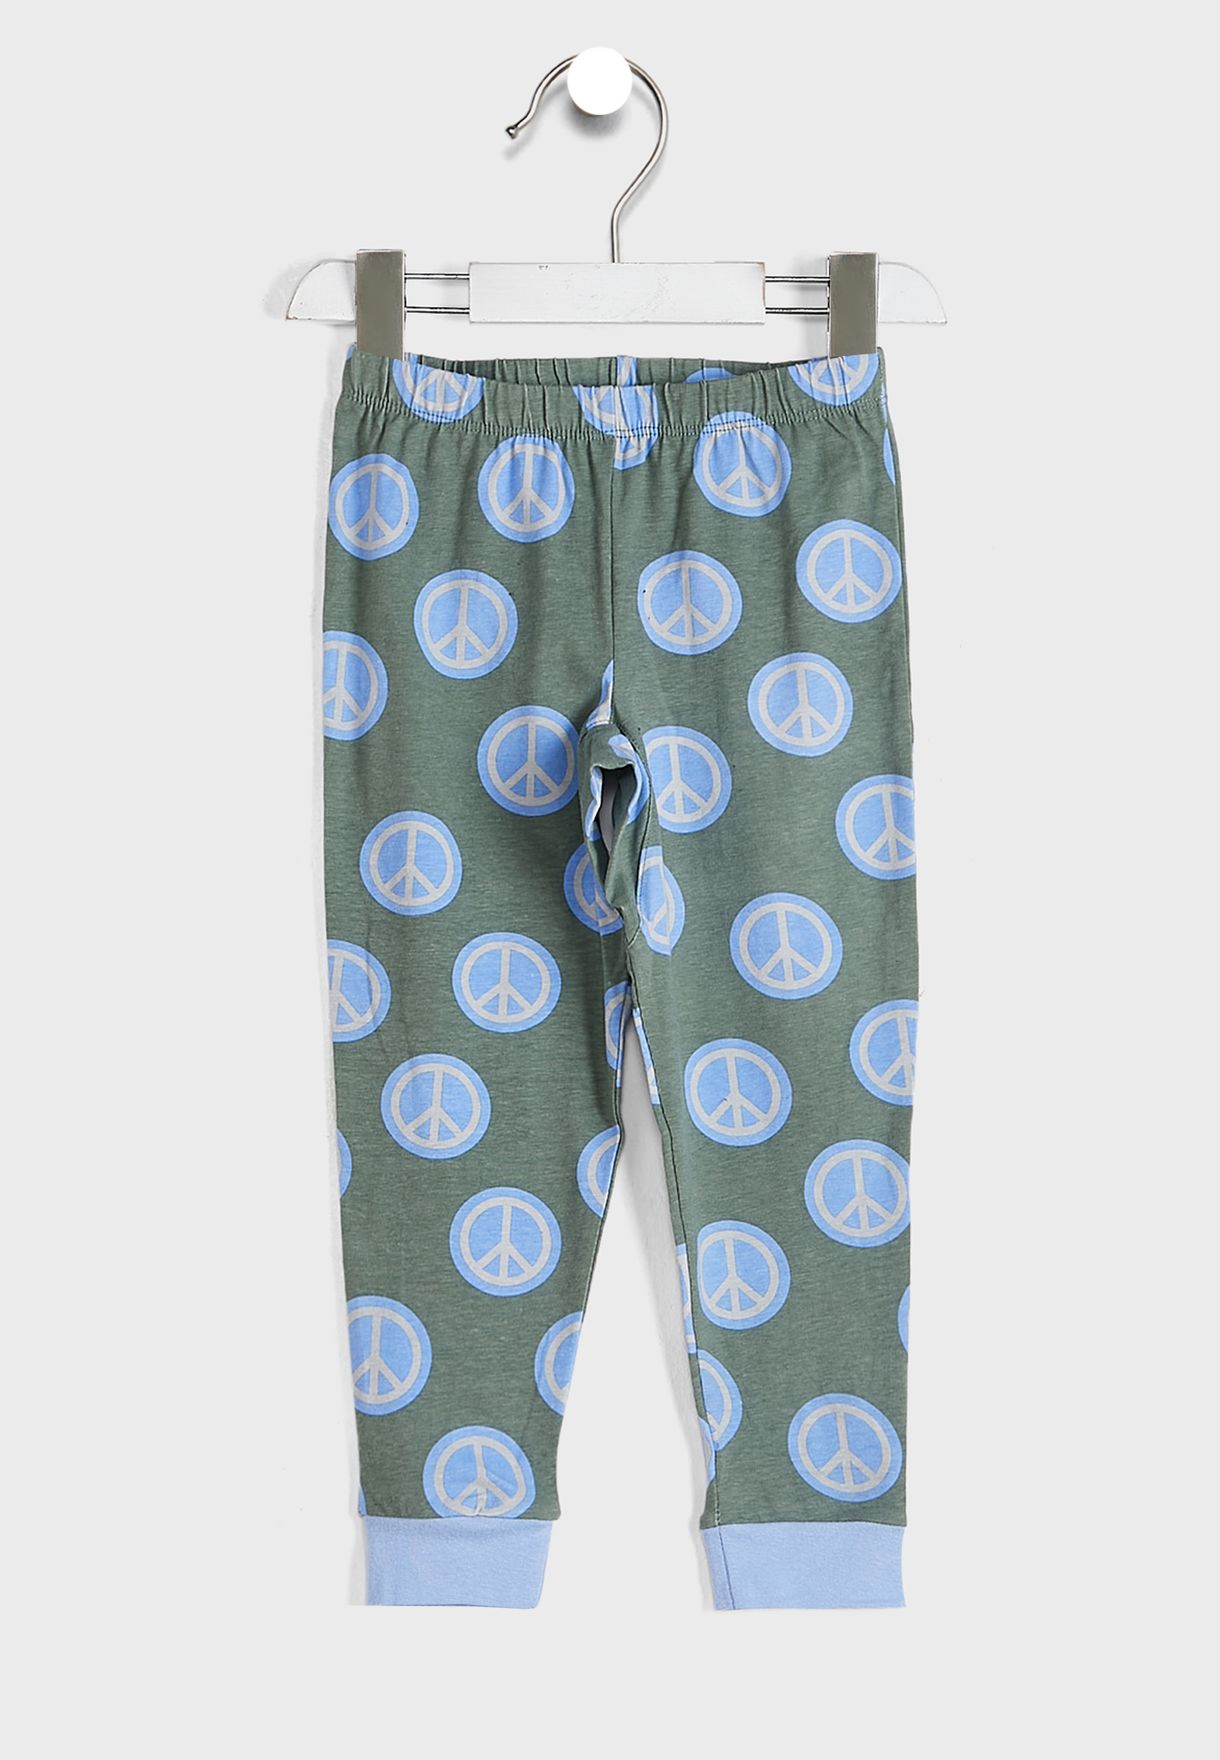 Orlando Long Sleeve Pyjama Set Licensed